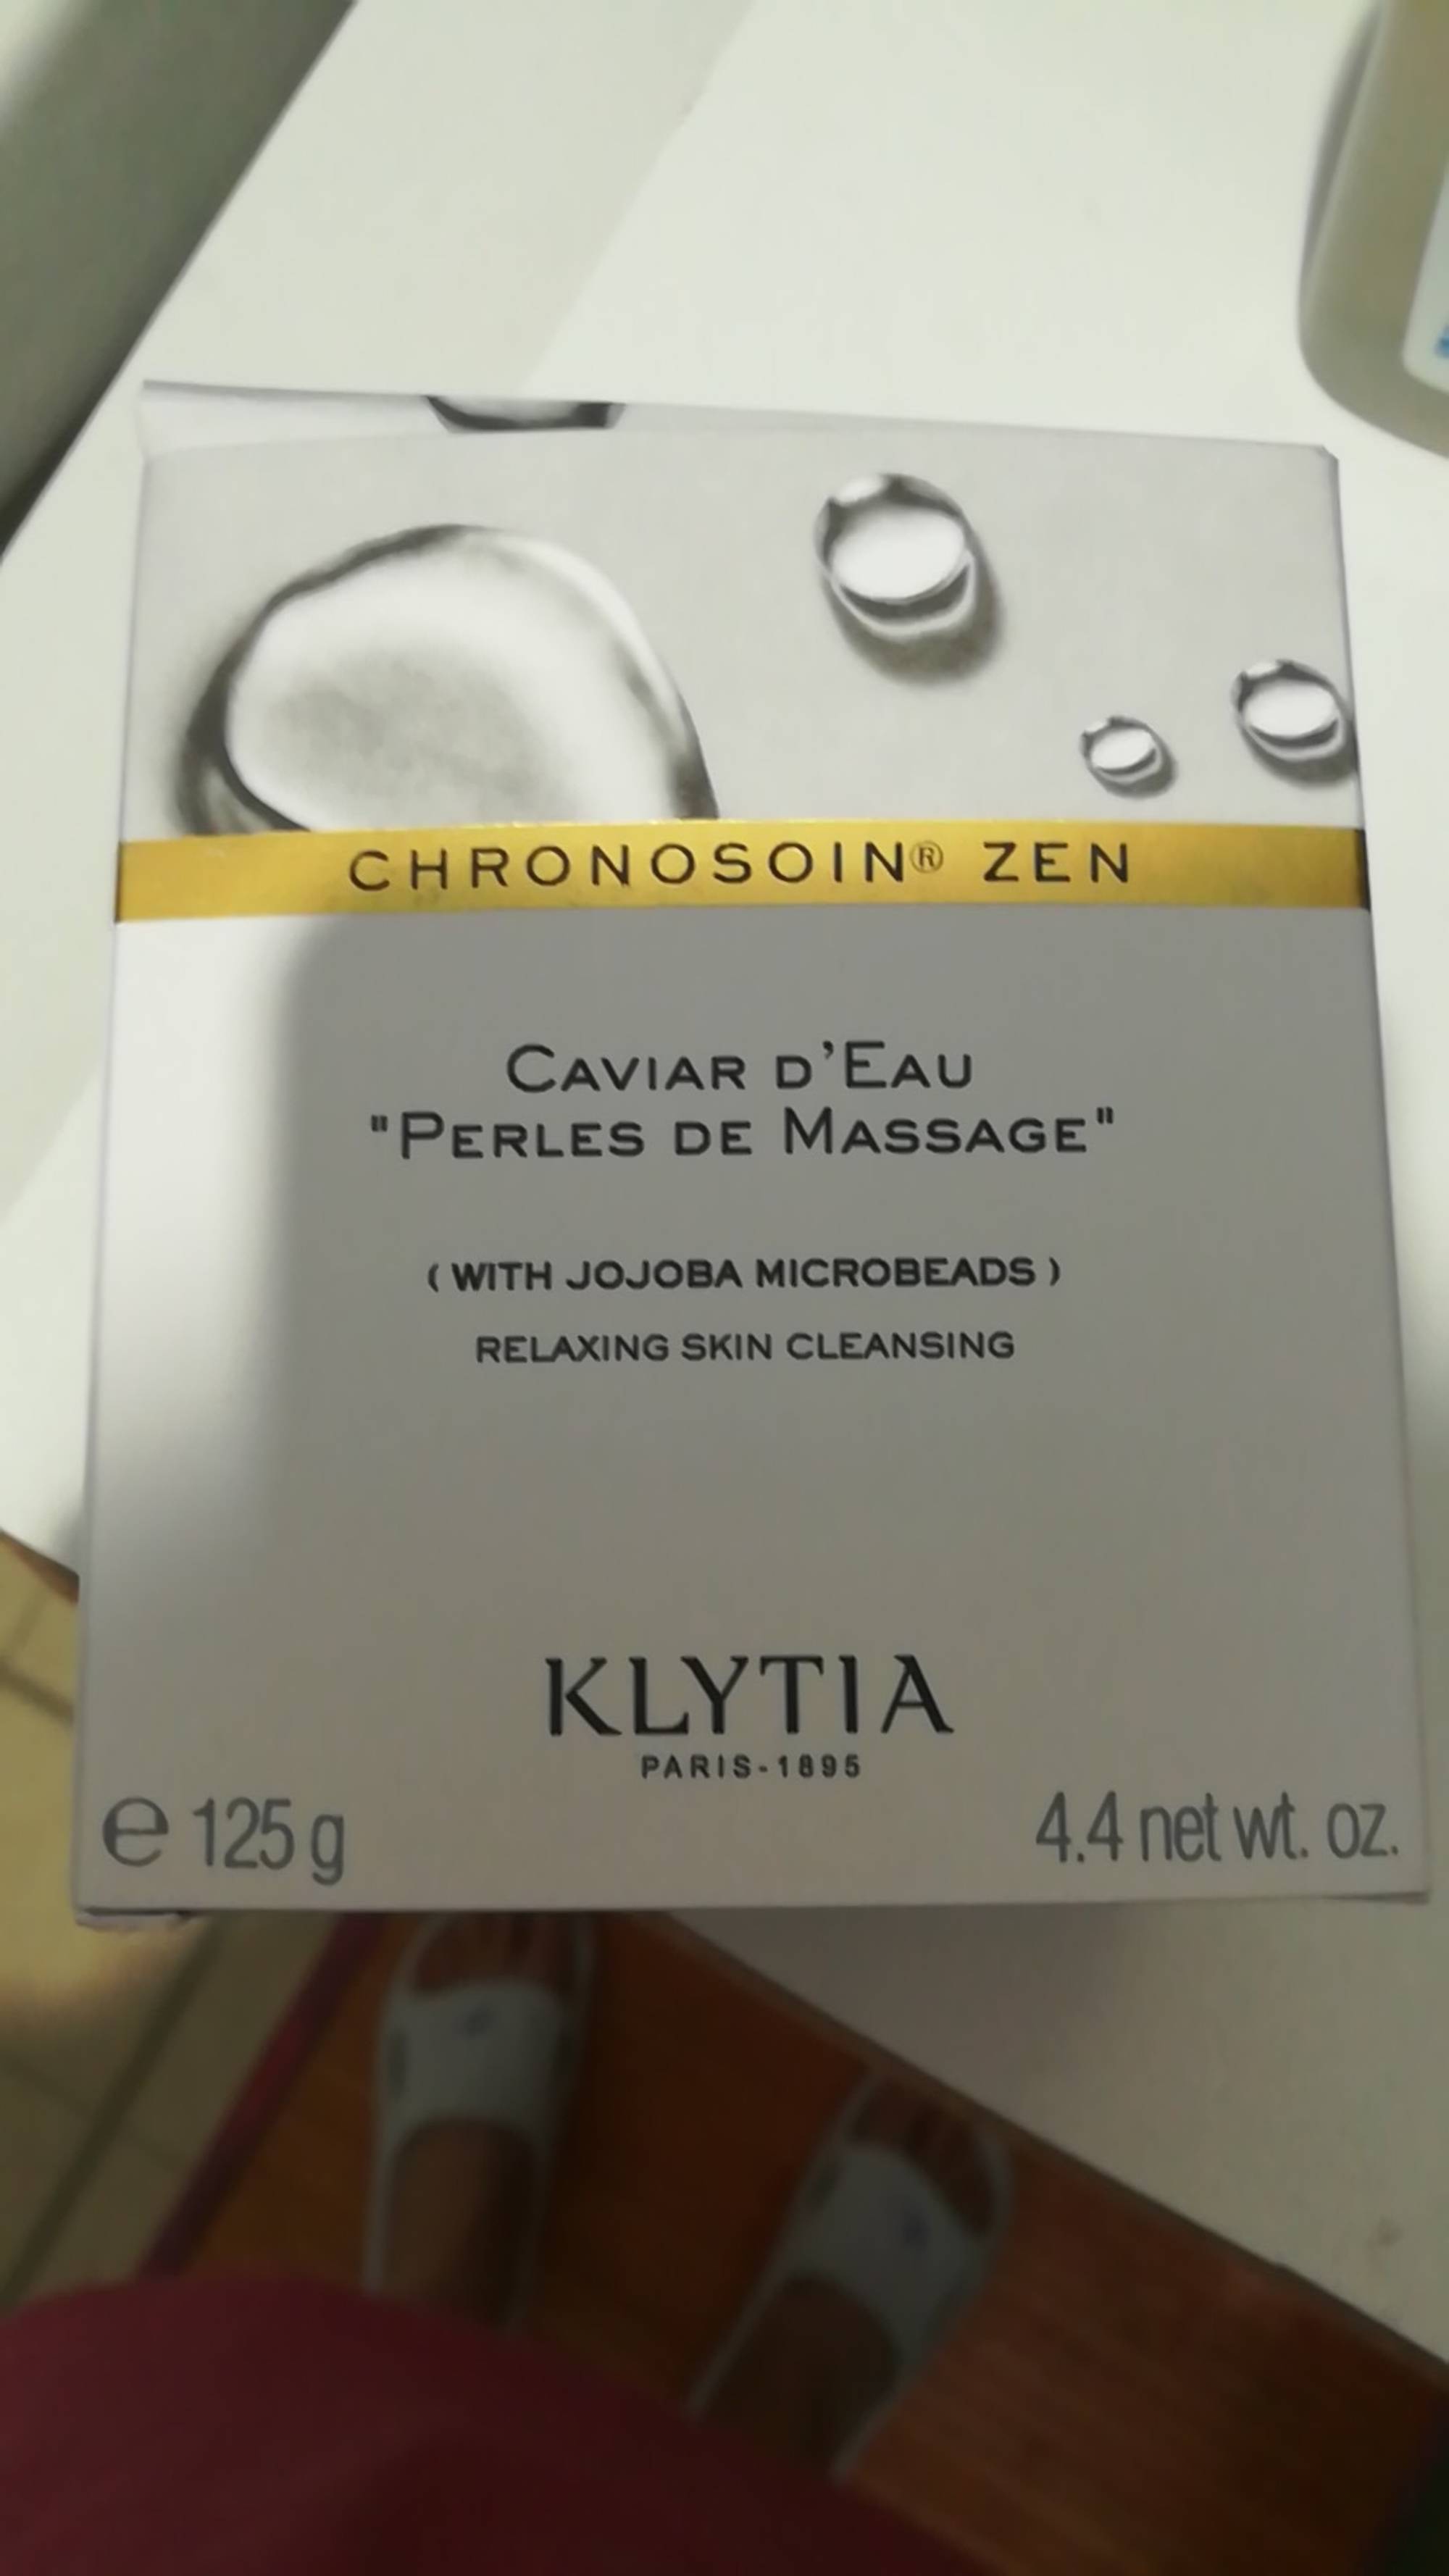 KLYTIA - Caviar d'eau - Perle de massage